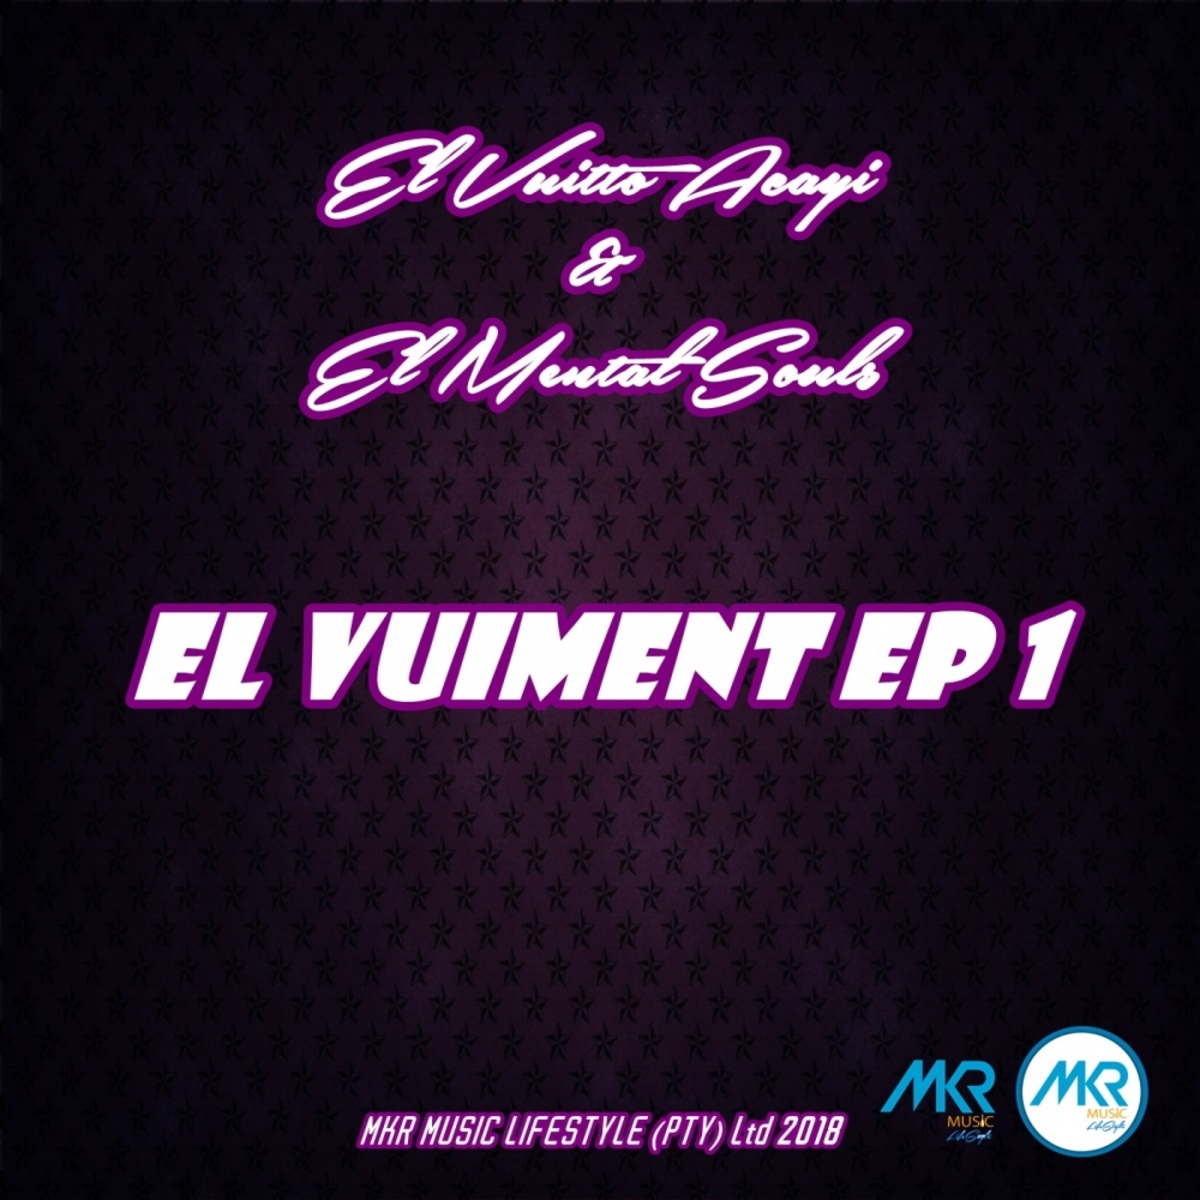 El Vuitto Acayi - El VuiMent EP 1 / MKR MUSIC (PTY) Ltd